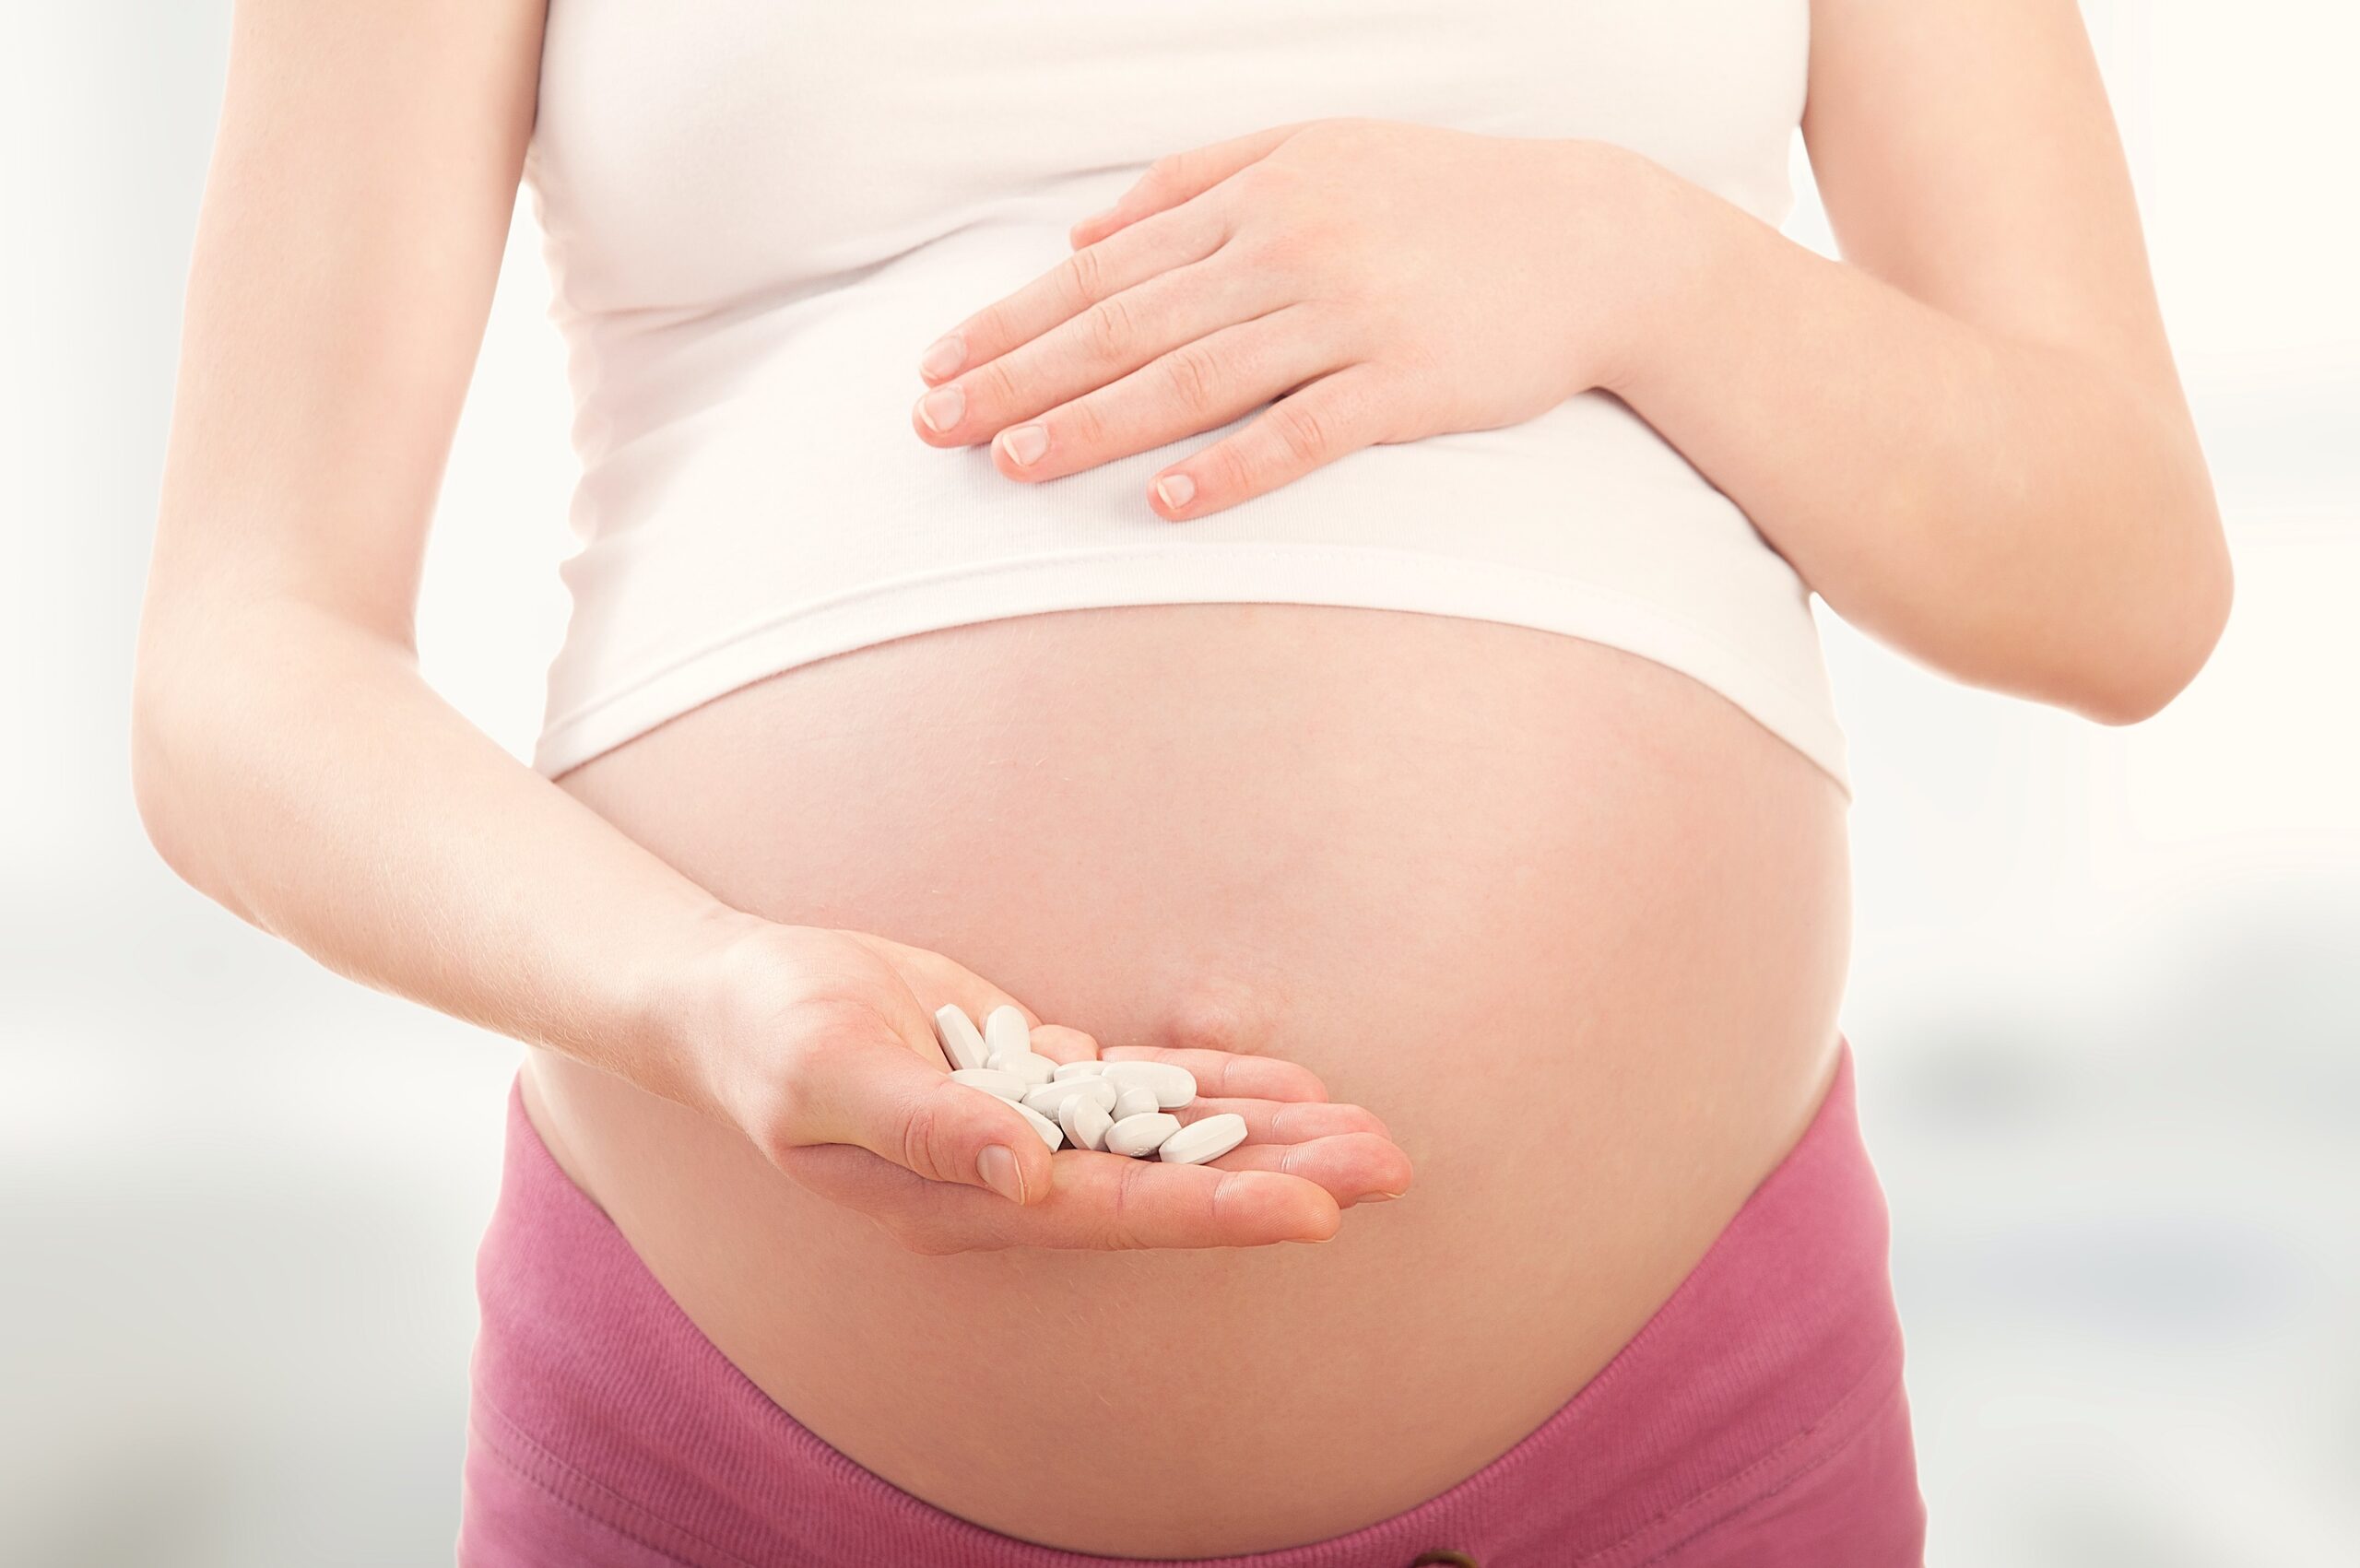 Ingesta frecuente de paracetamol durante el embarazo